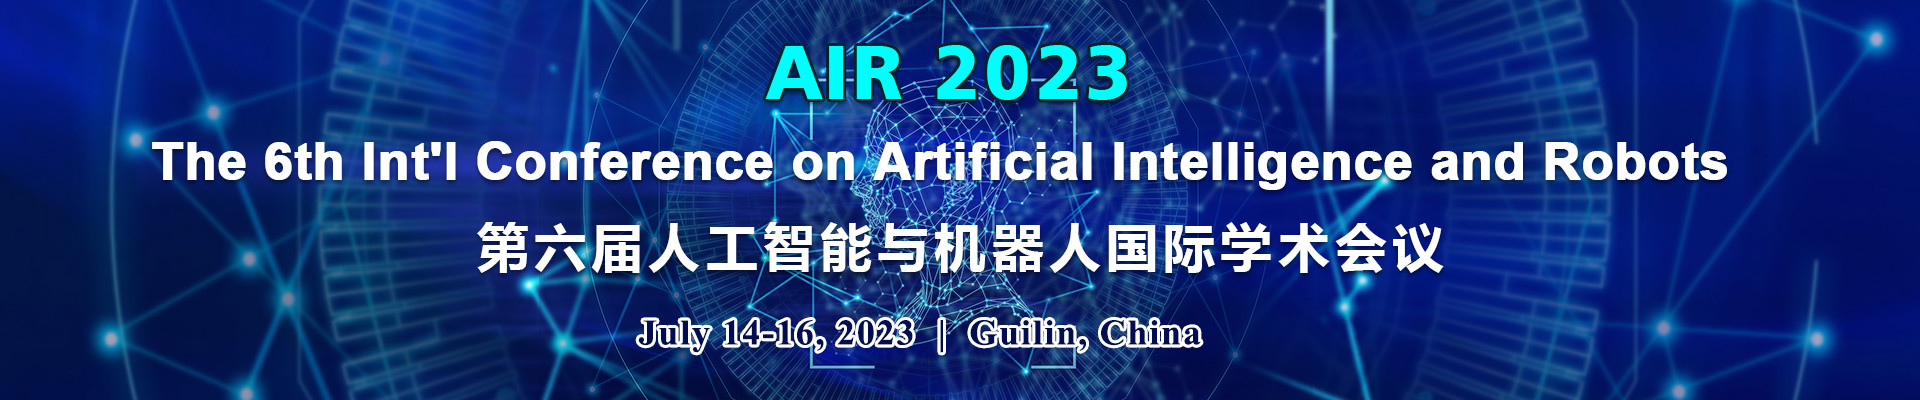 第六屆人工智能與機器人國際學術會議 (AIR 2023)